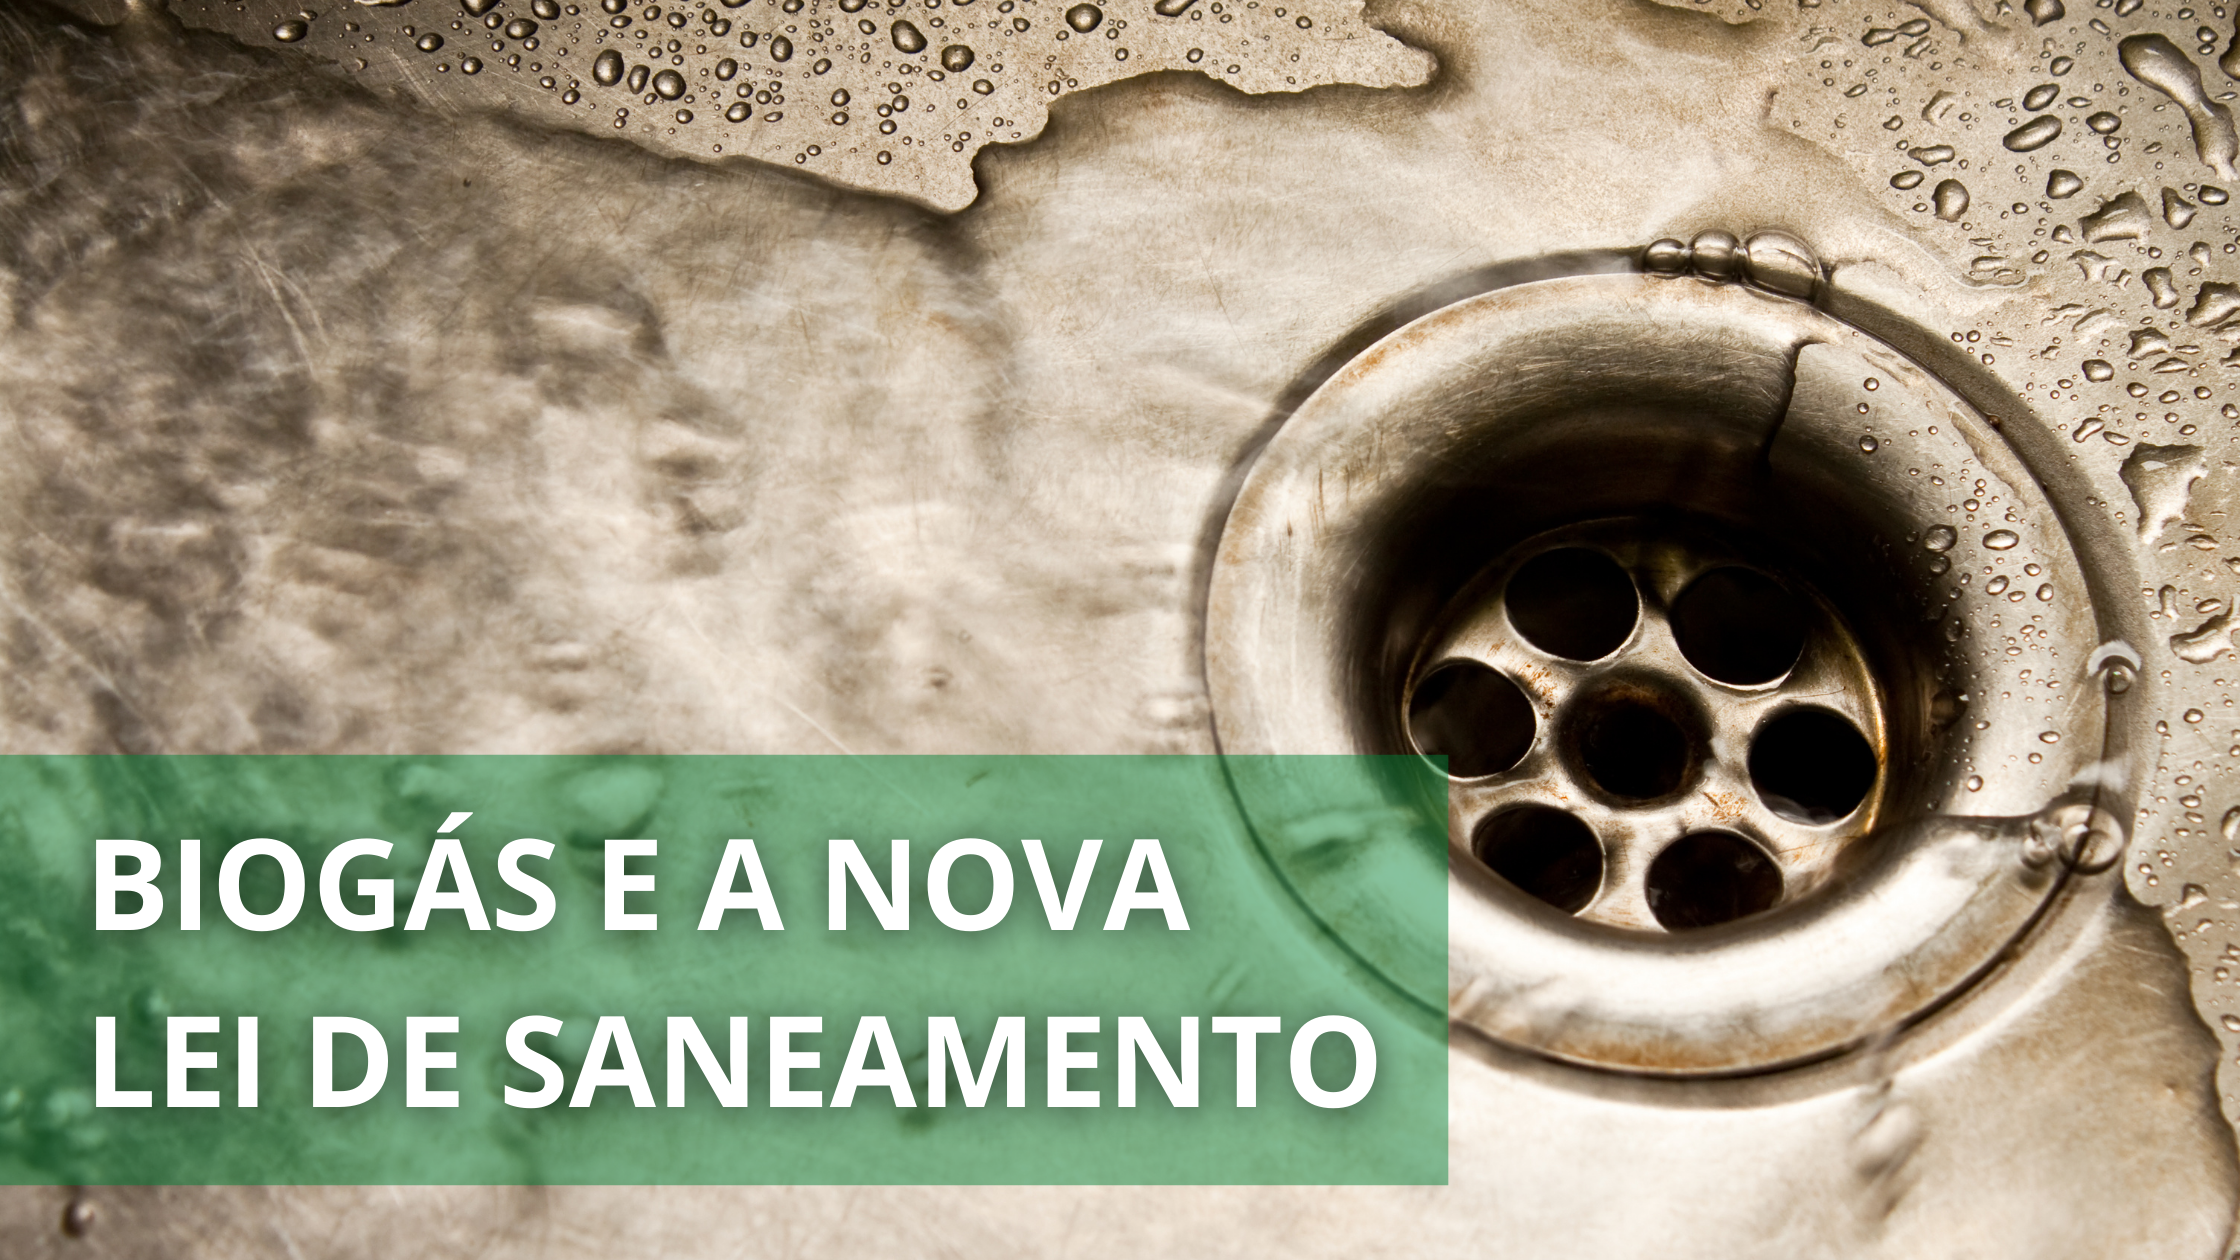 Marco do Saneamento no Brasil com Biogás